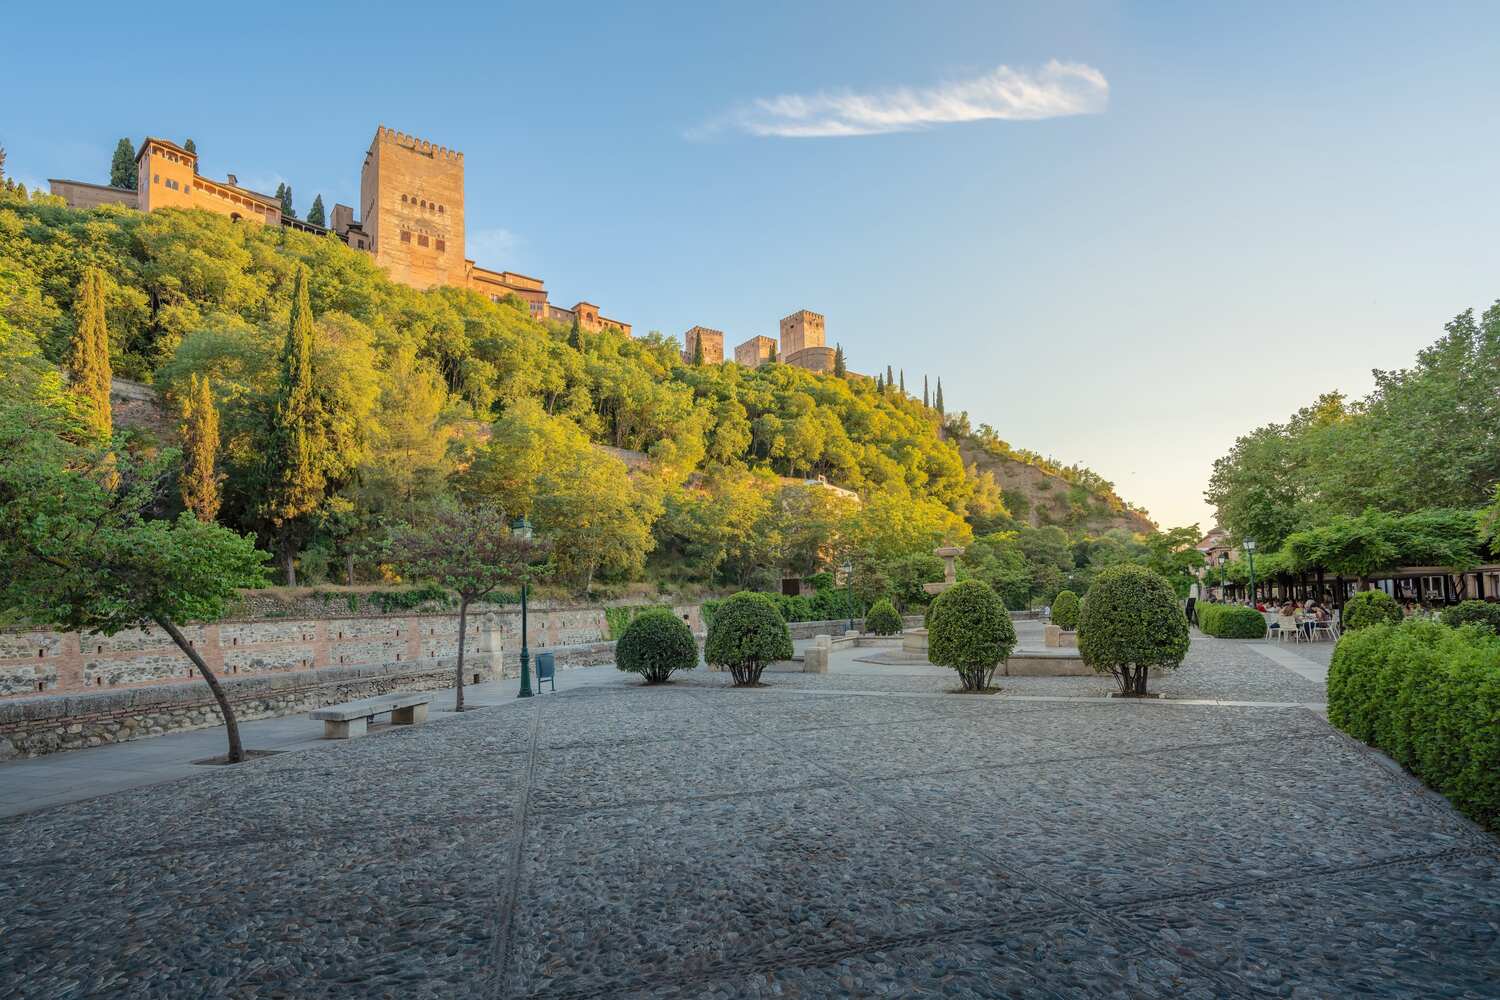 Paseo-de-los-tristes-in-Granada- Where to stay in Granada